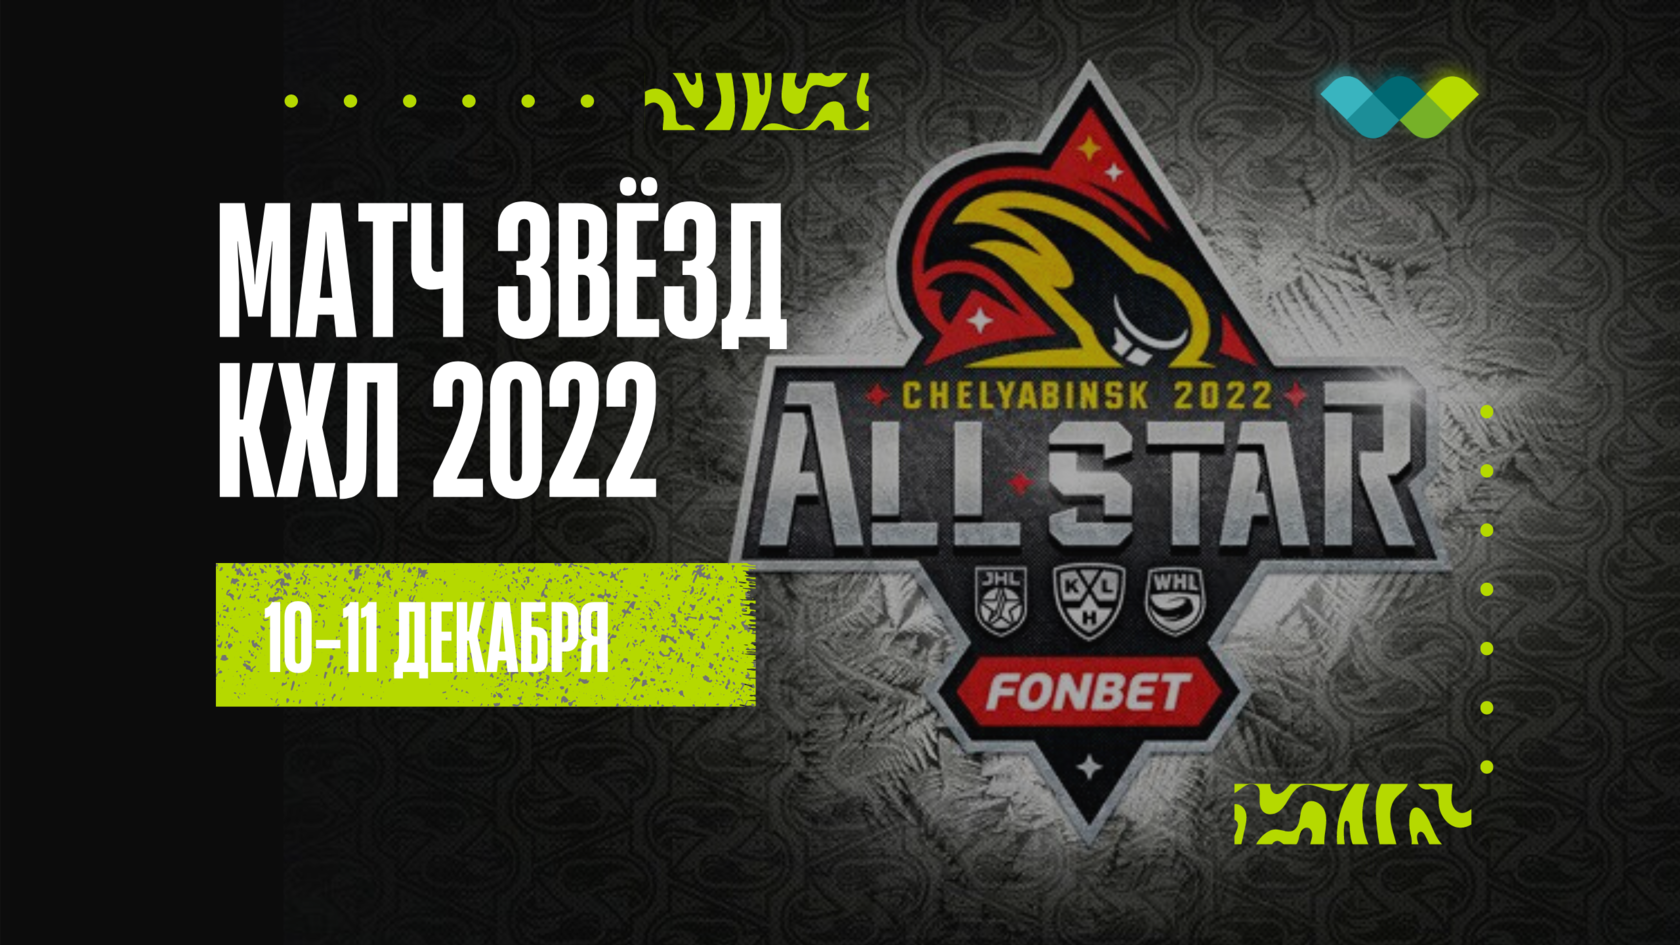 Матч всех звезд Челябинск 2022. Матч звезд Челябинск 2022 лого. Матч всех звезд билеты